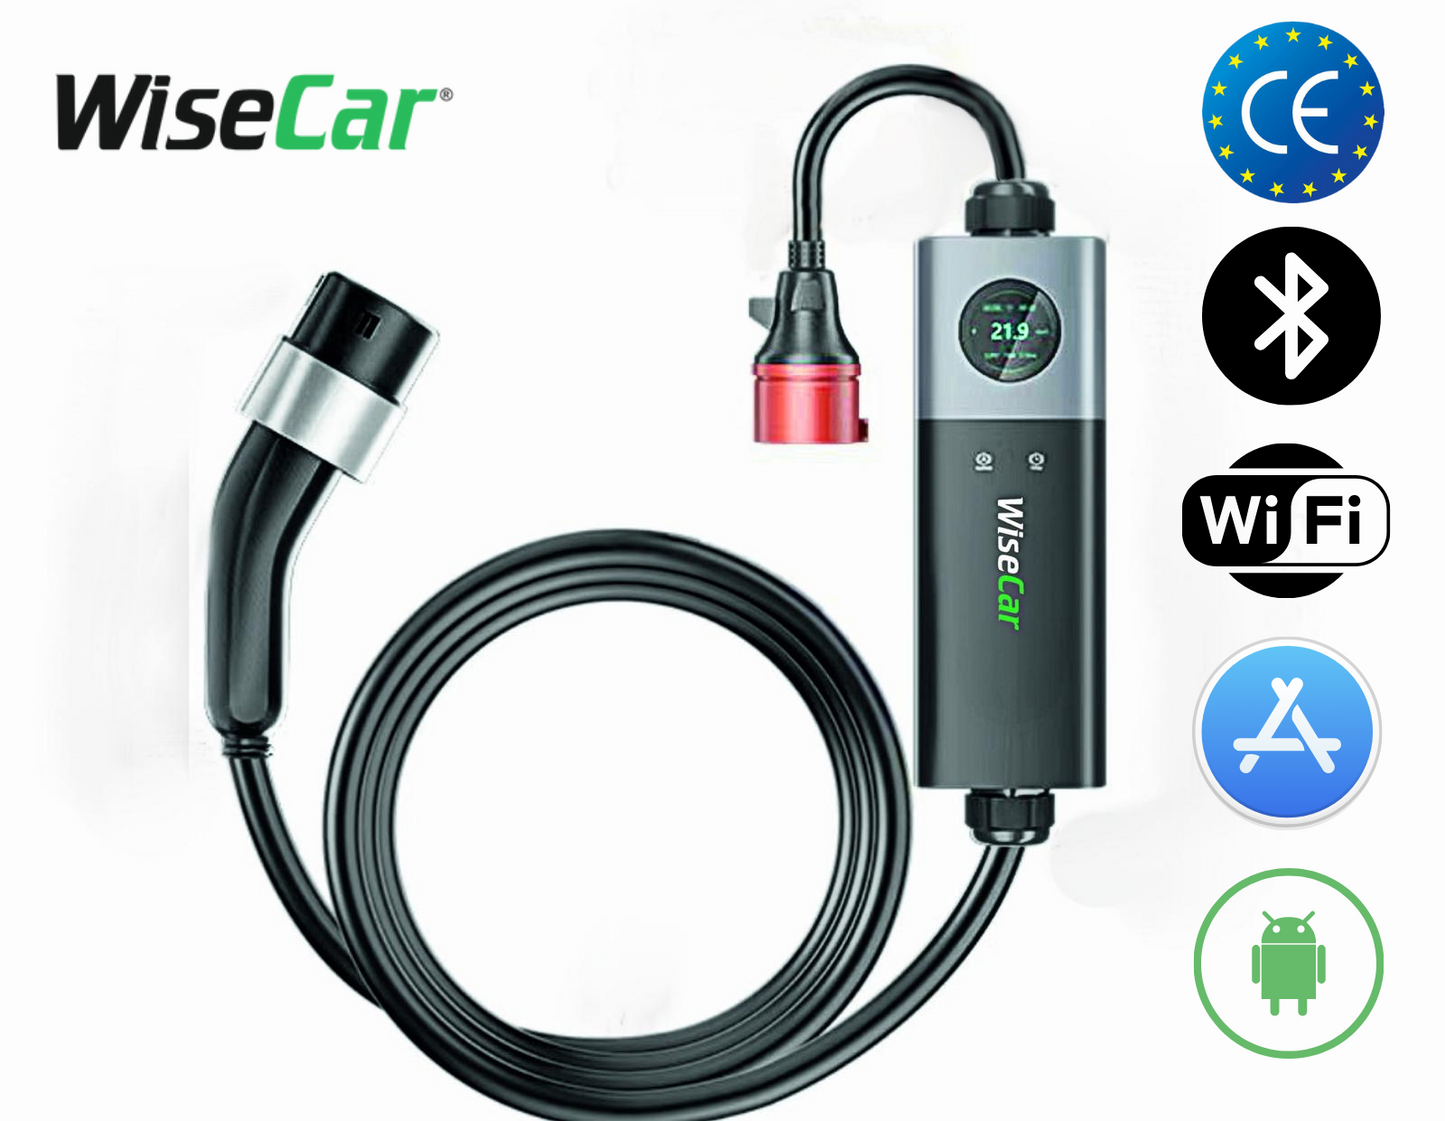 WiseCar WTPS3 22 KW Taşınabilir Elektrikli Araç Şarj Cihazı Mobil Uygulamalı + Wifi + Bluetooth